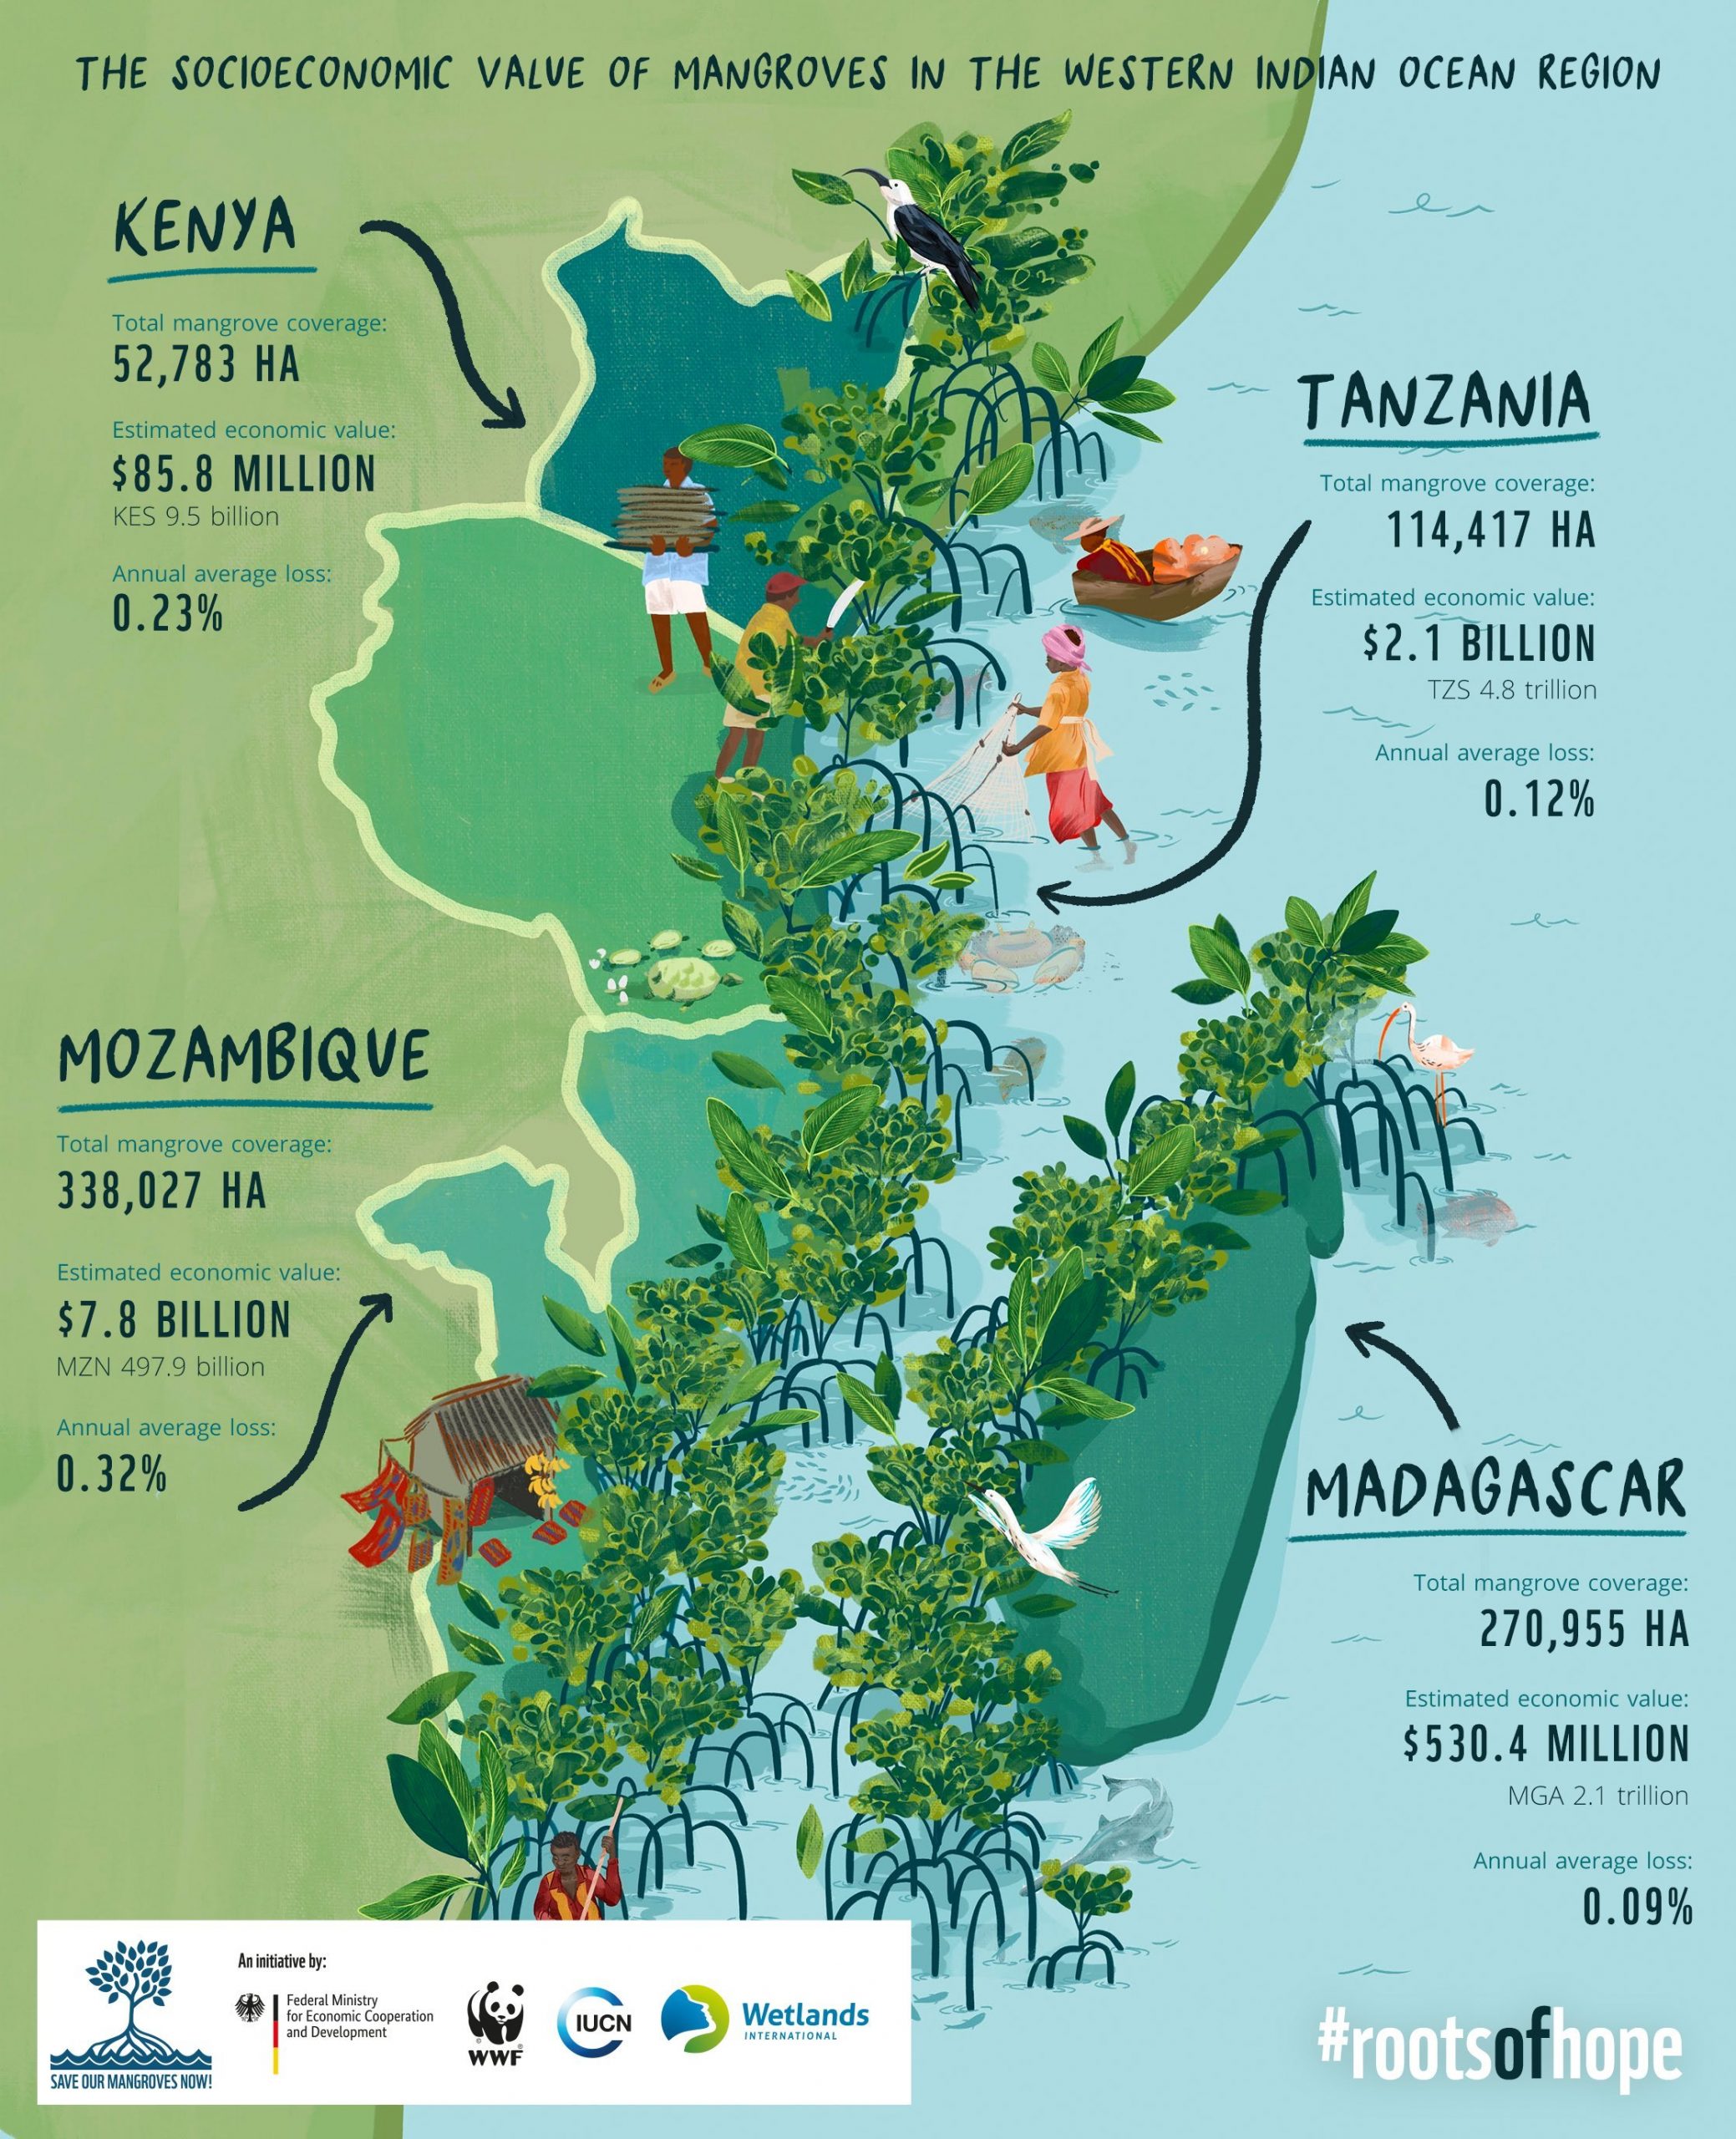 Raíces de Esperanza: El valor socioeconómico de manglares en la región oeste del Océano Índico (IPBES)